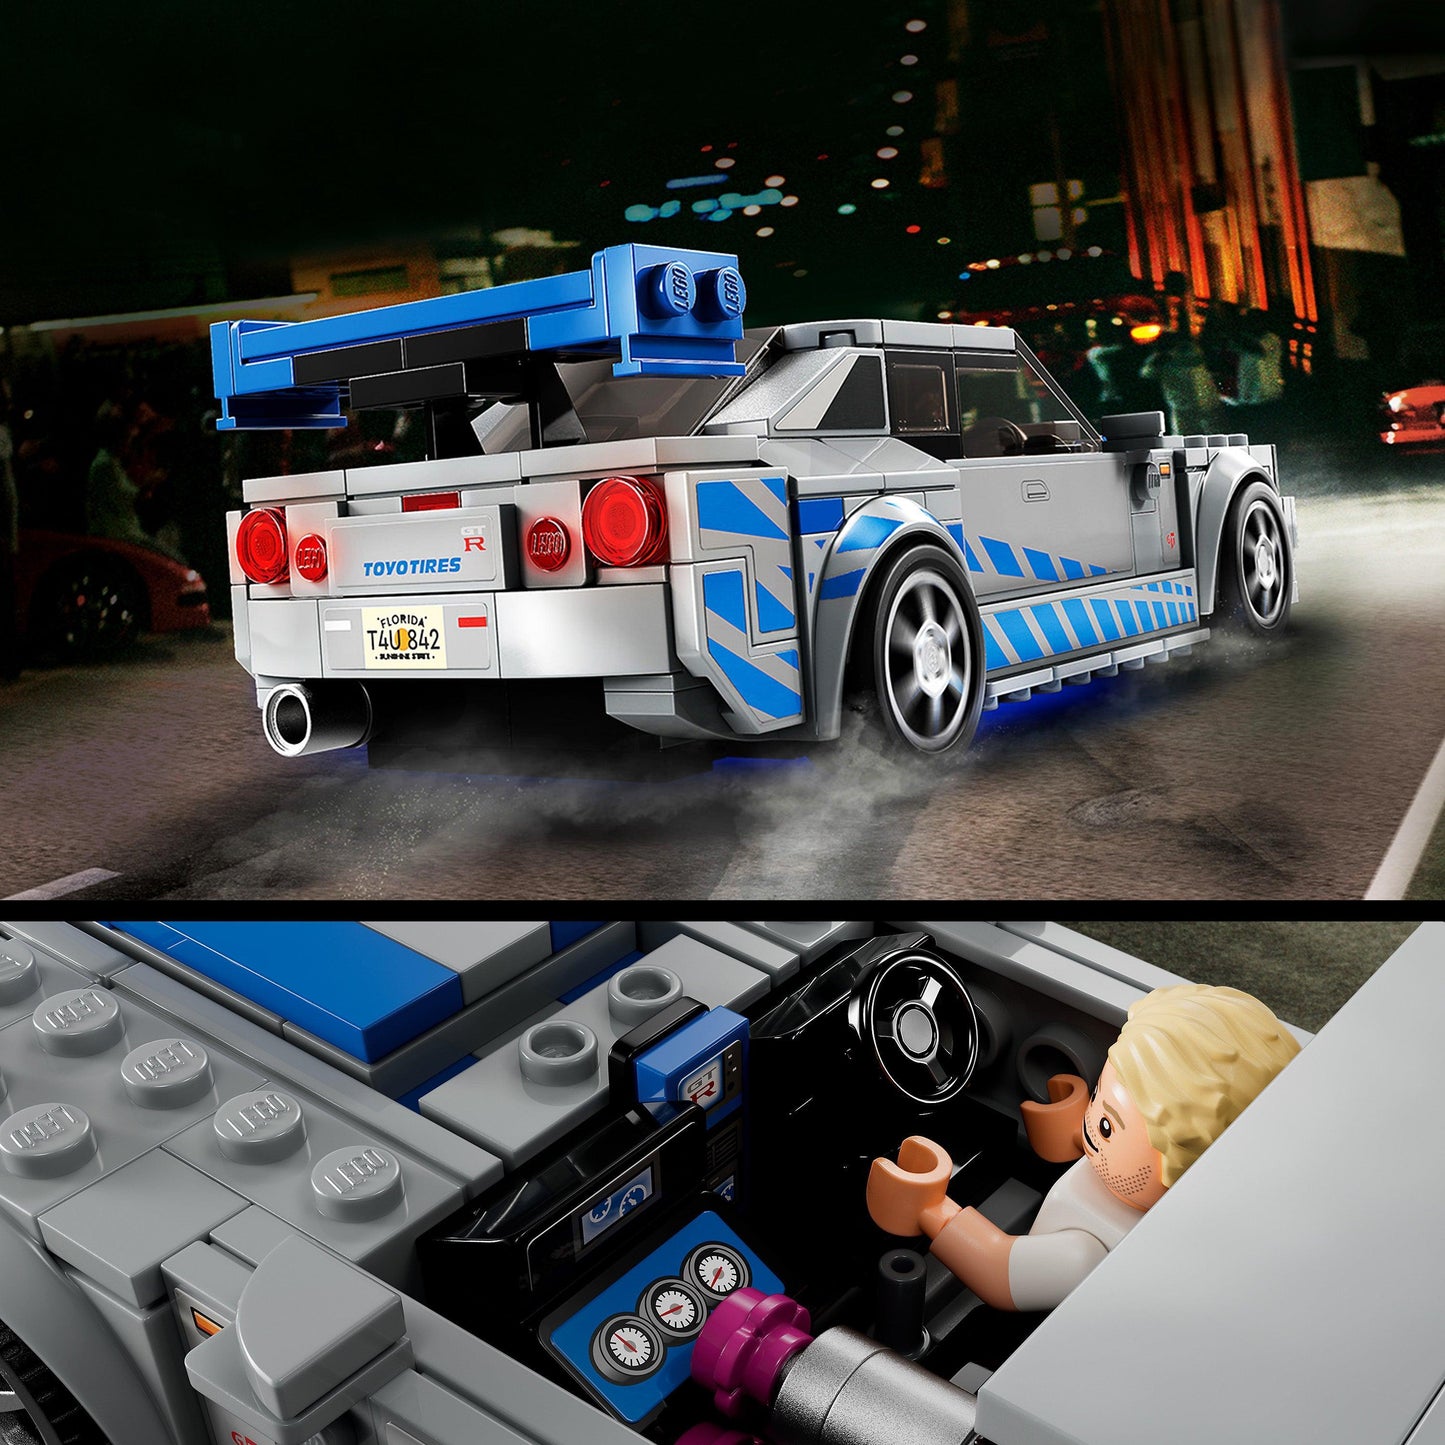 LEGO 2 Fast 2 Furious Nissan Skyline GT-R (R34) 76917 Speedchampions LEGO SPEEDCHAMPIONS @ 2TTOYS LEGO €. 21.48